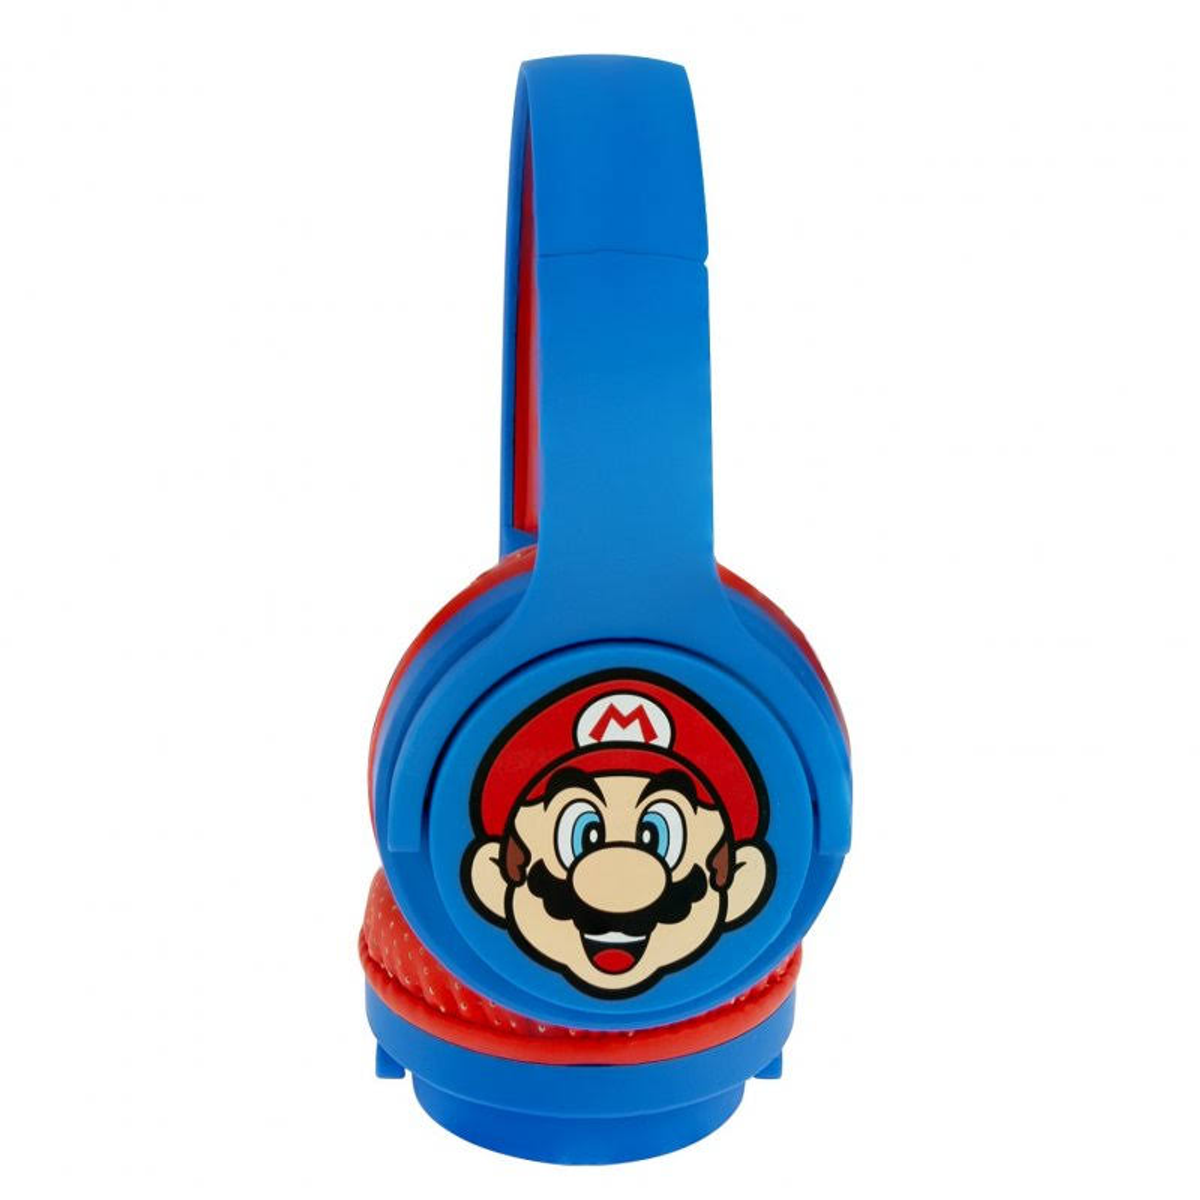 OTL TECHNOLOGIES blau Bluetooth Super Mario, On-ear Kopfhörer